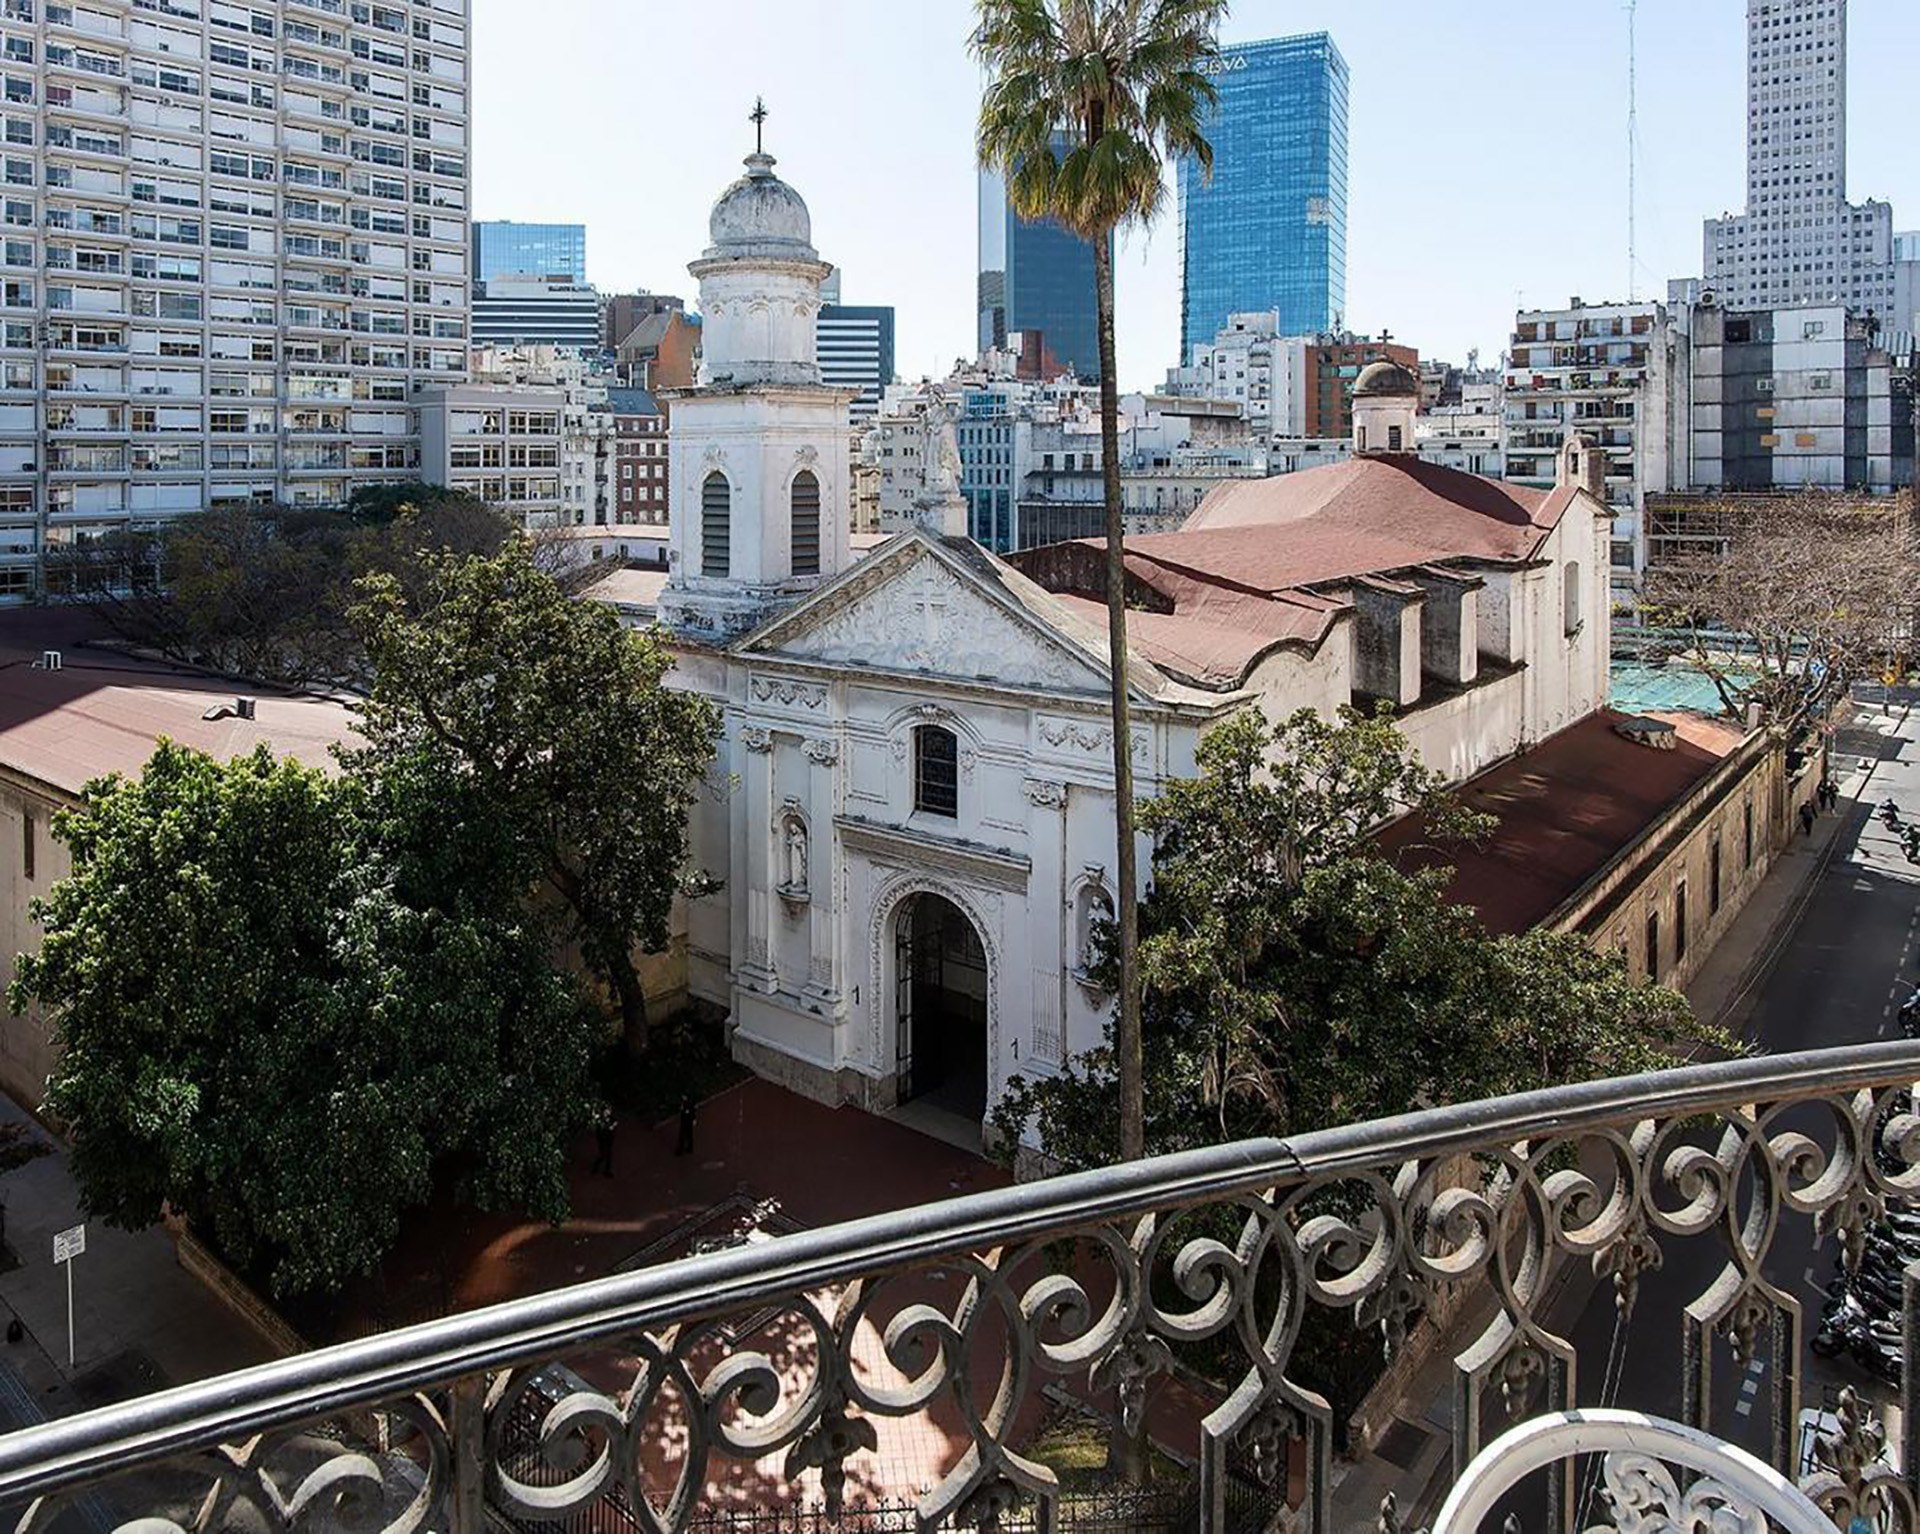 Así se observa desde el balcón la iglesia Santa Catalina ubicada en Viamonte y San Martín